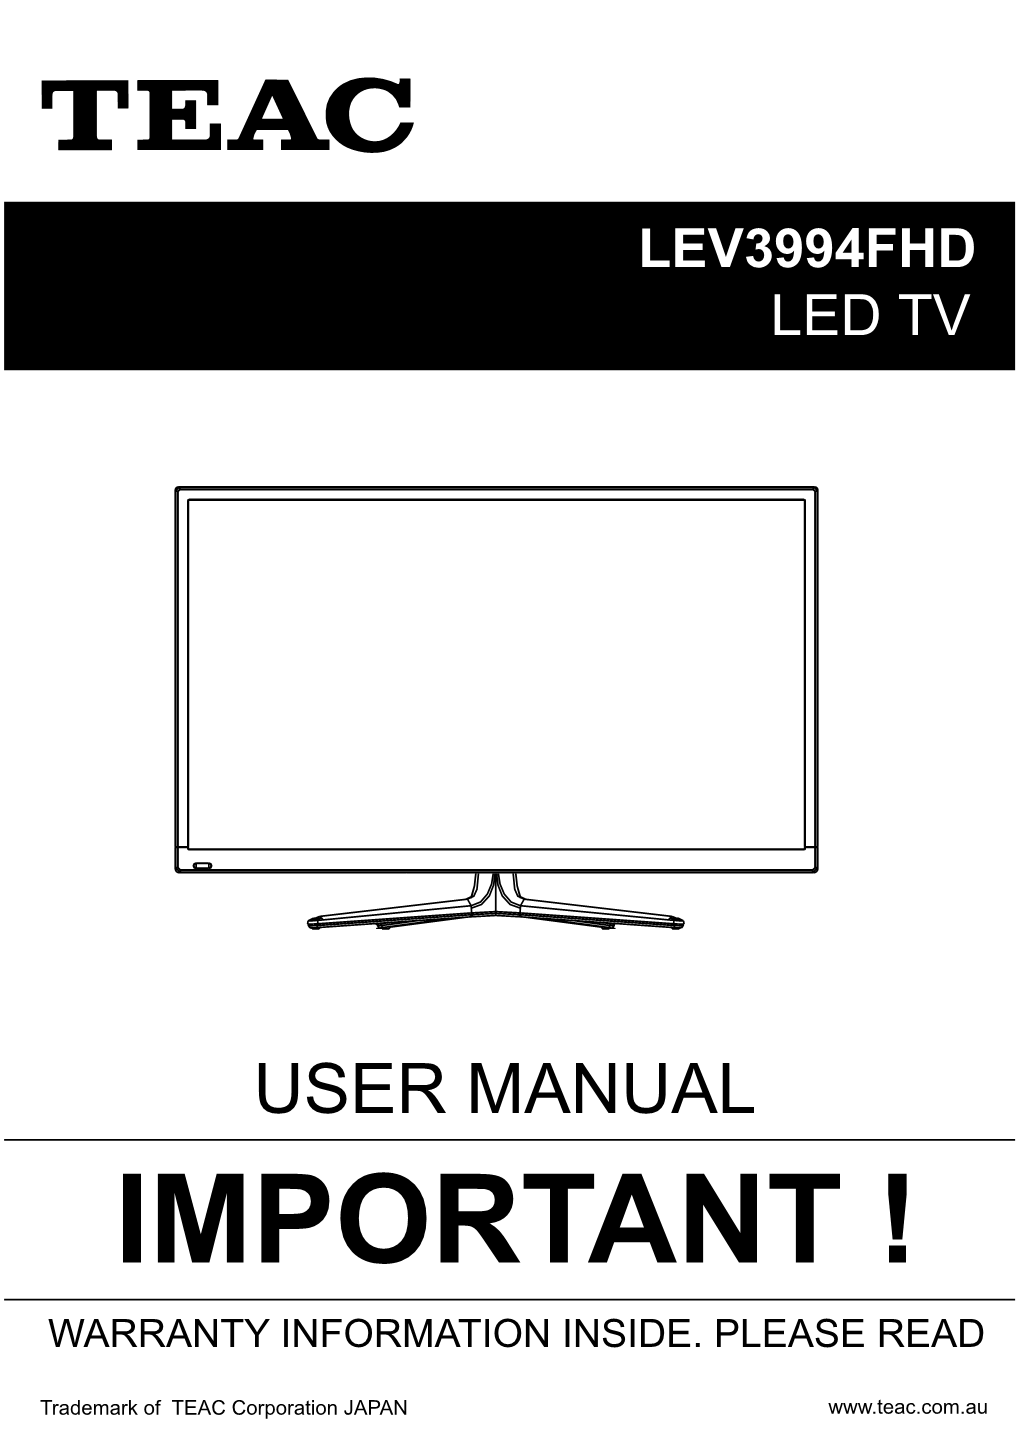 User Manual Important ! Warranty Information Inside